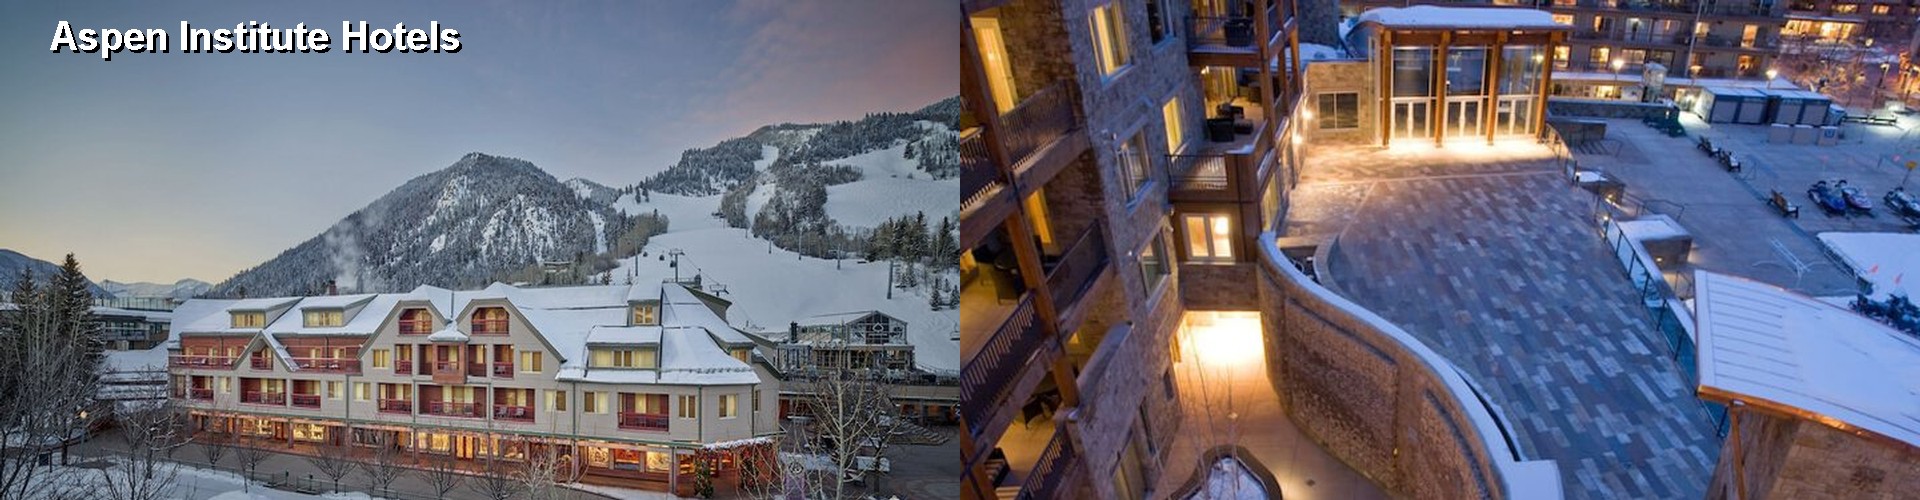 5 Best Hotels near Aspen Institute